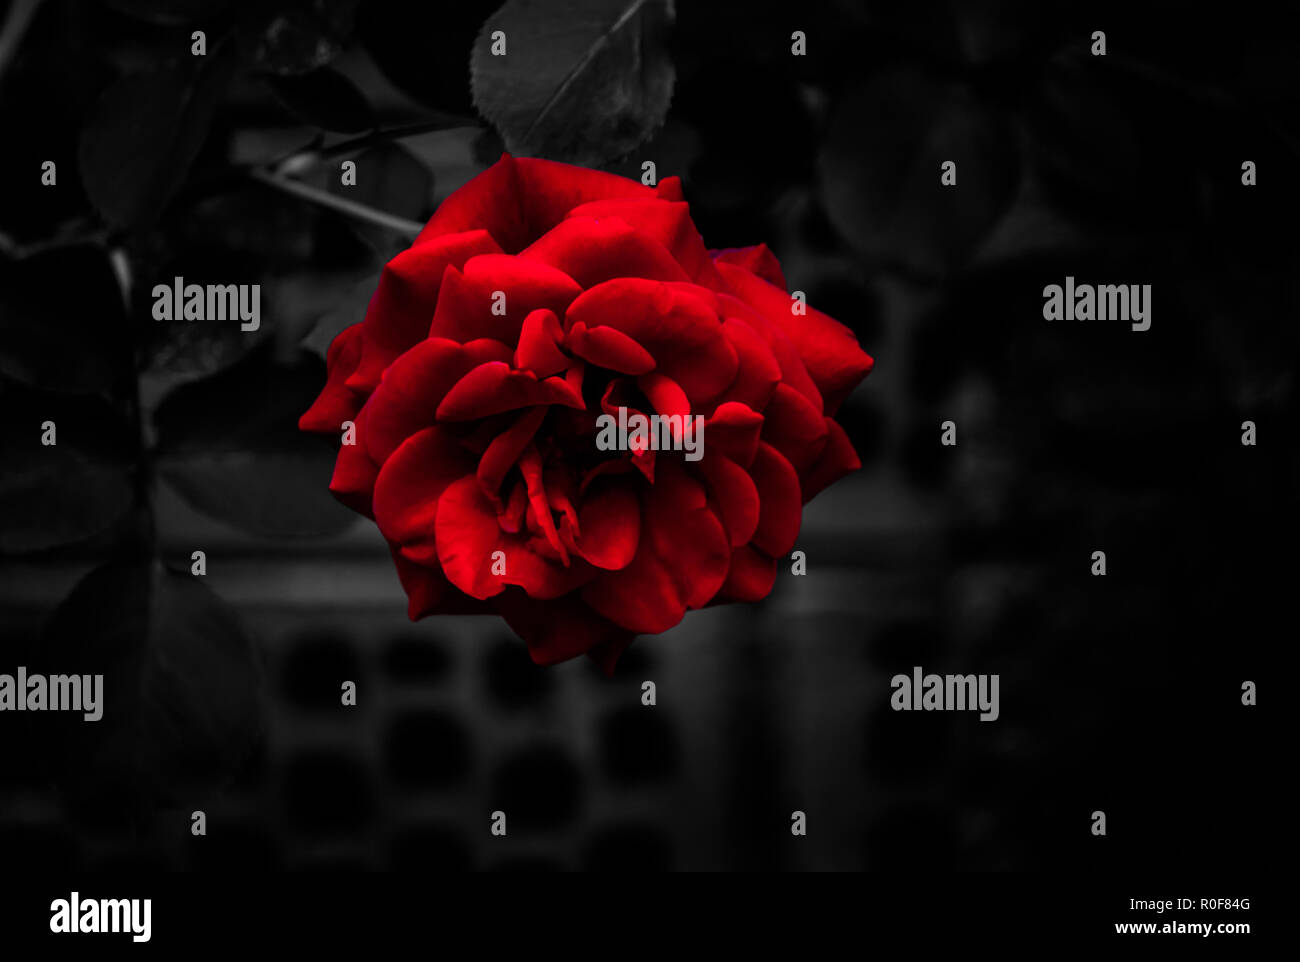 Einzelnen Blutprobe rote Rose auf monochromatischen dunklen Hintergrund Stockfoto